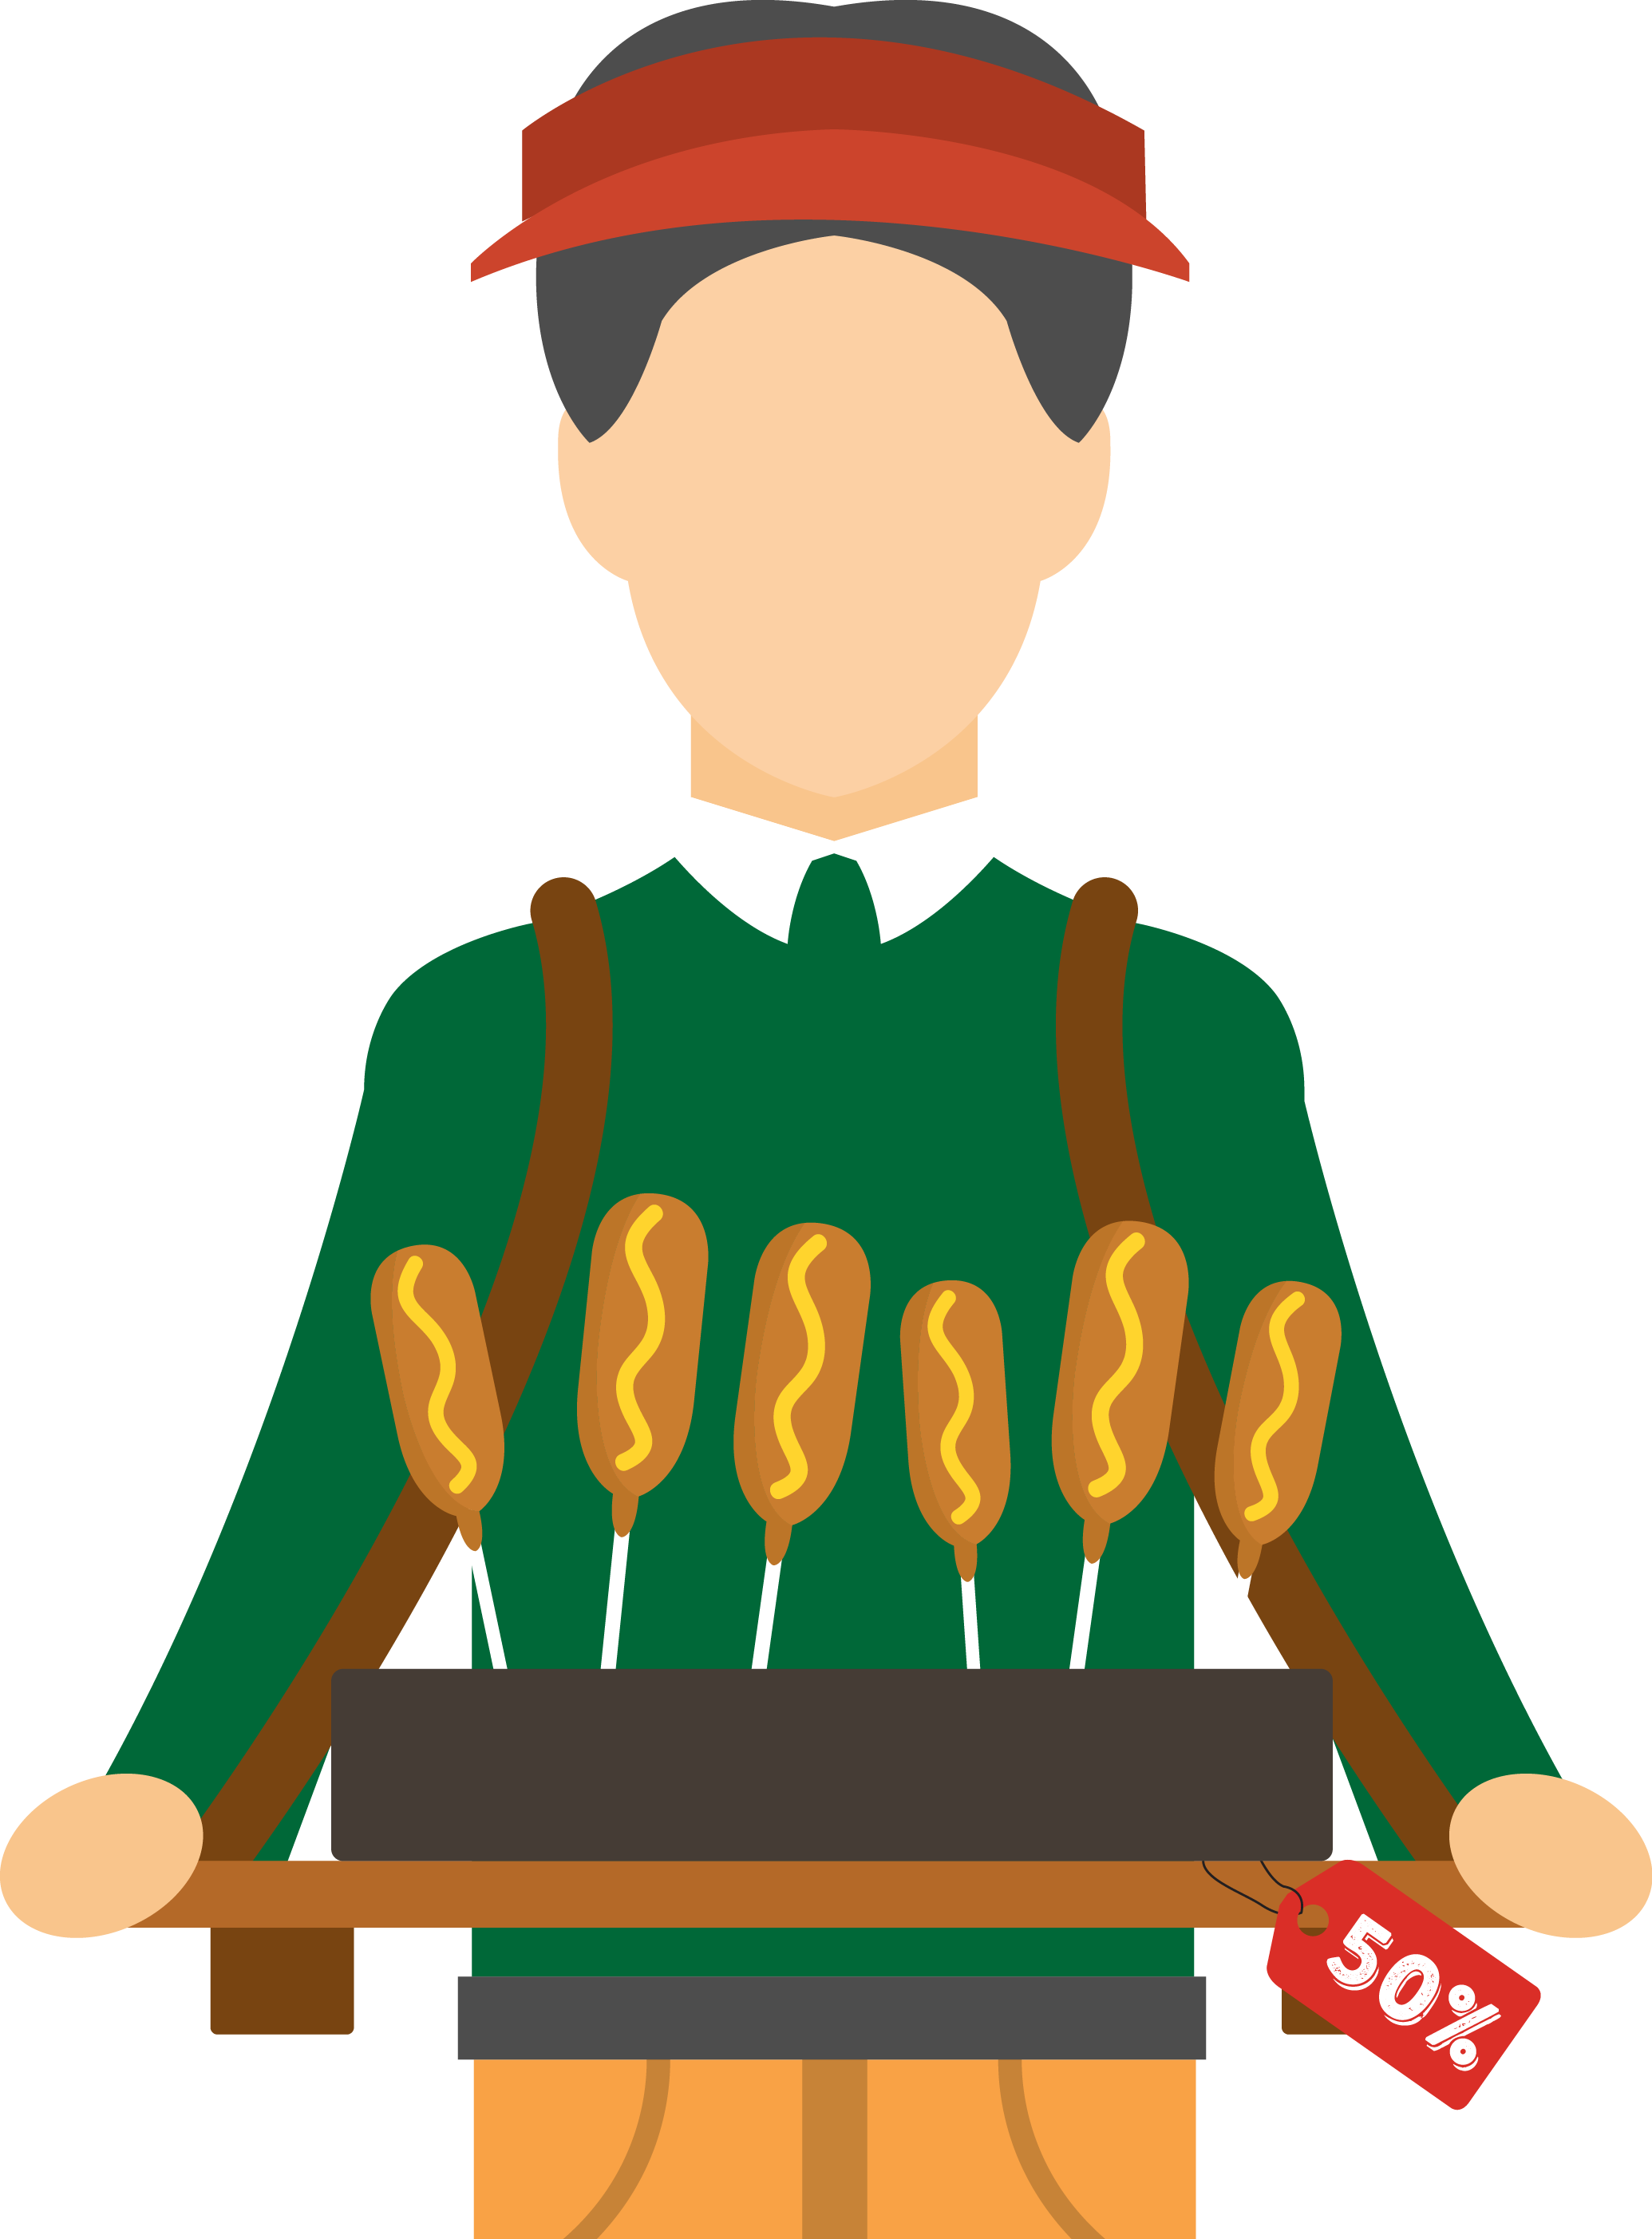 Hot Dog Sausage Hamburger Fast Food French Fries - Hot Dog (2070x2805)